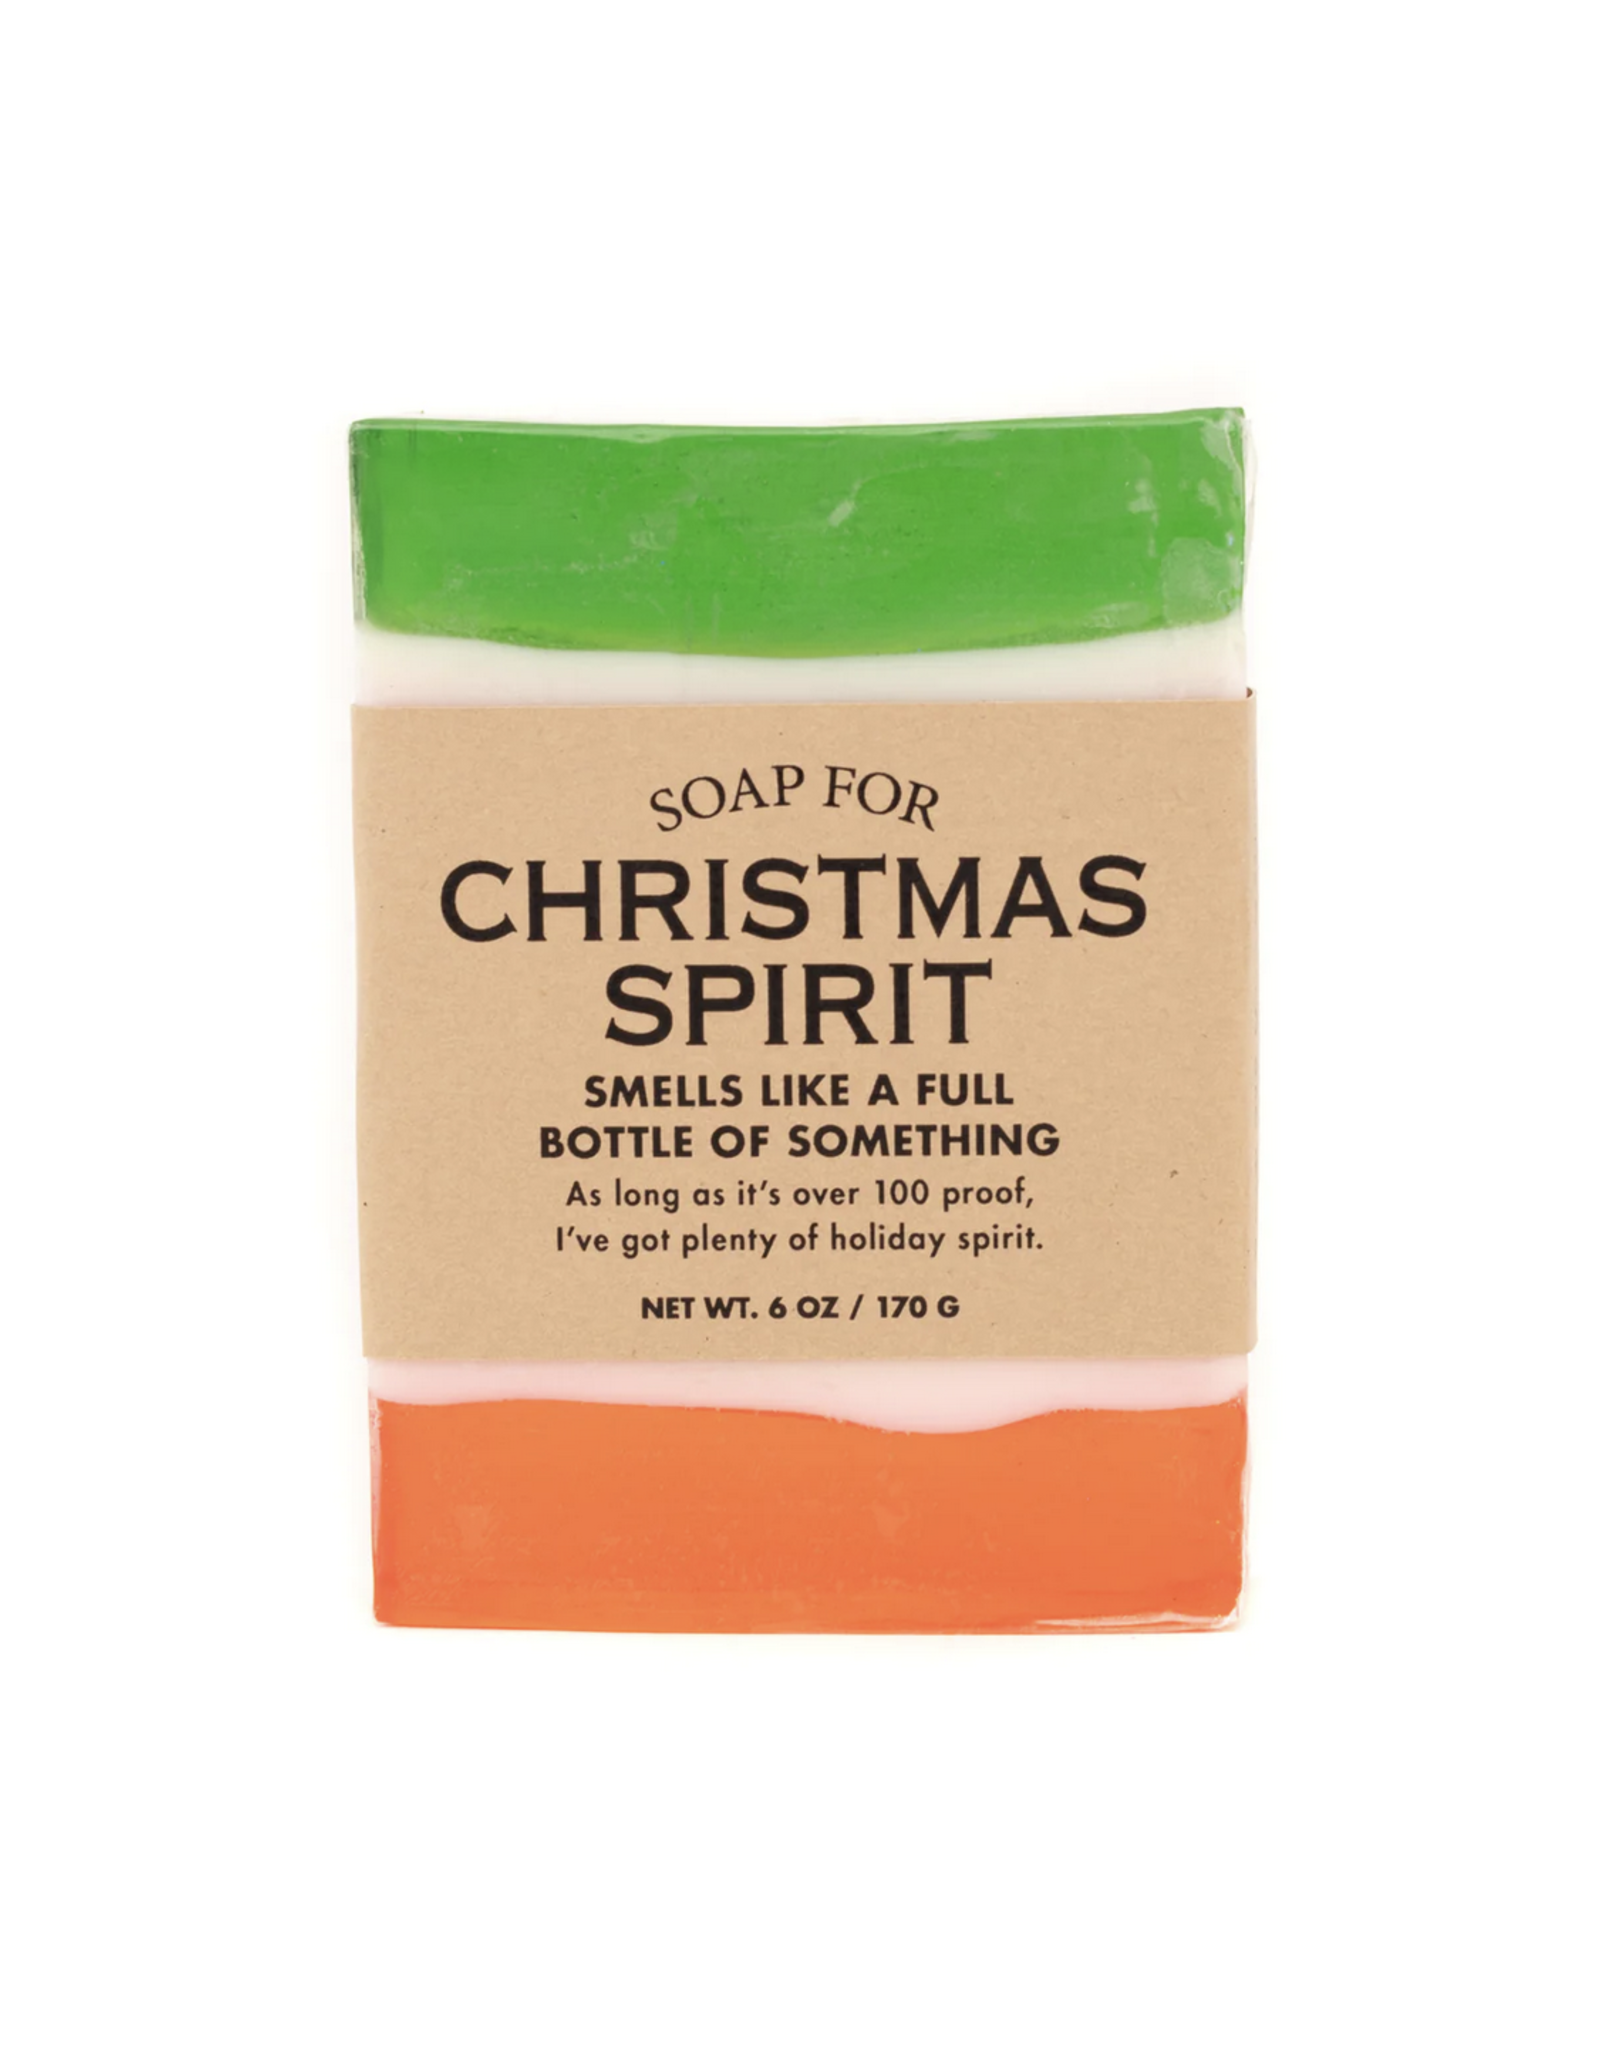 A Soap for Christmas Spirit *